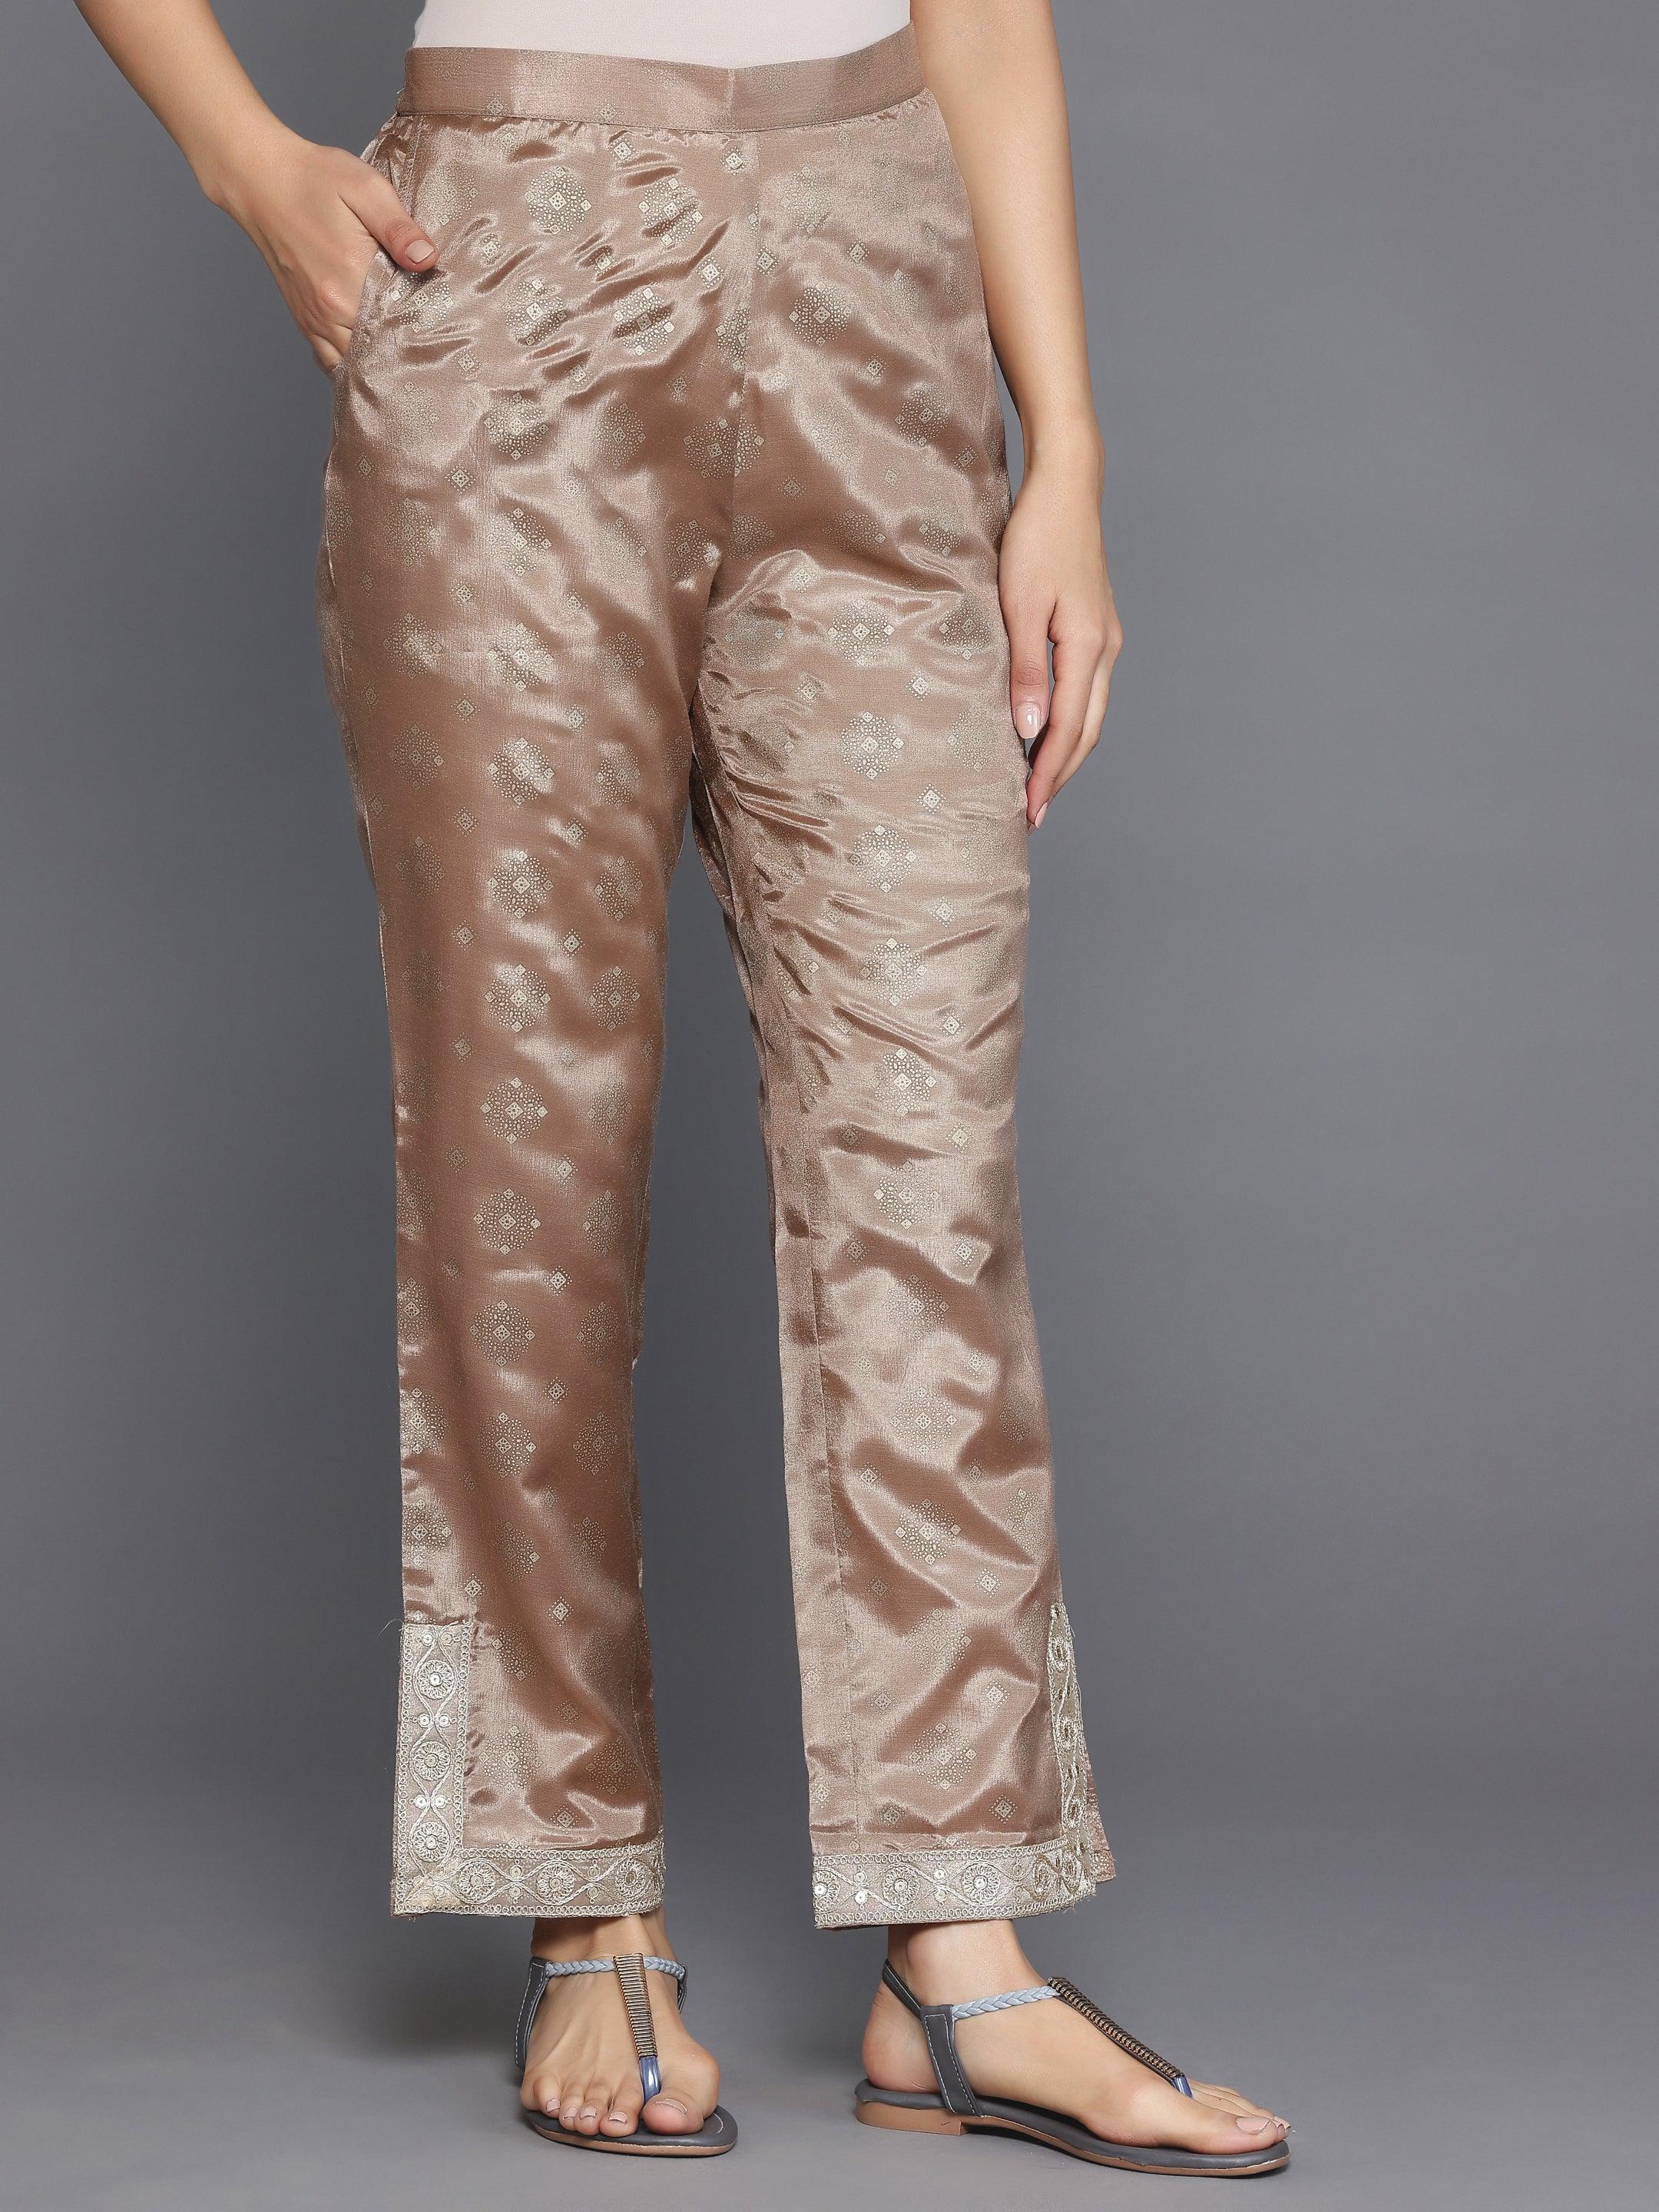 Brown Woven Design Silk Blend Straight Kurta Set